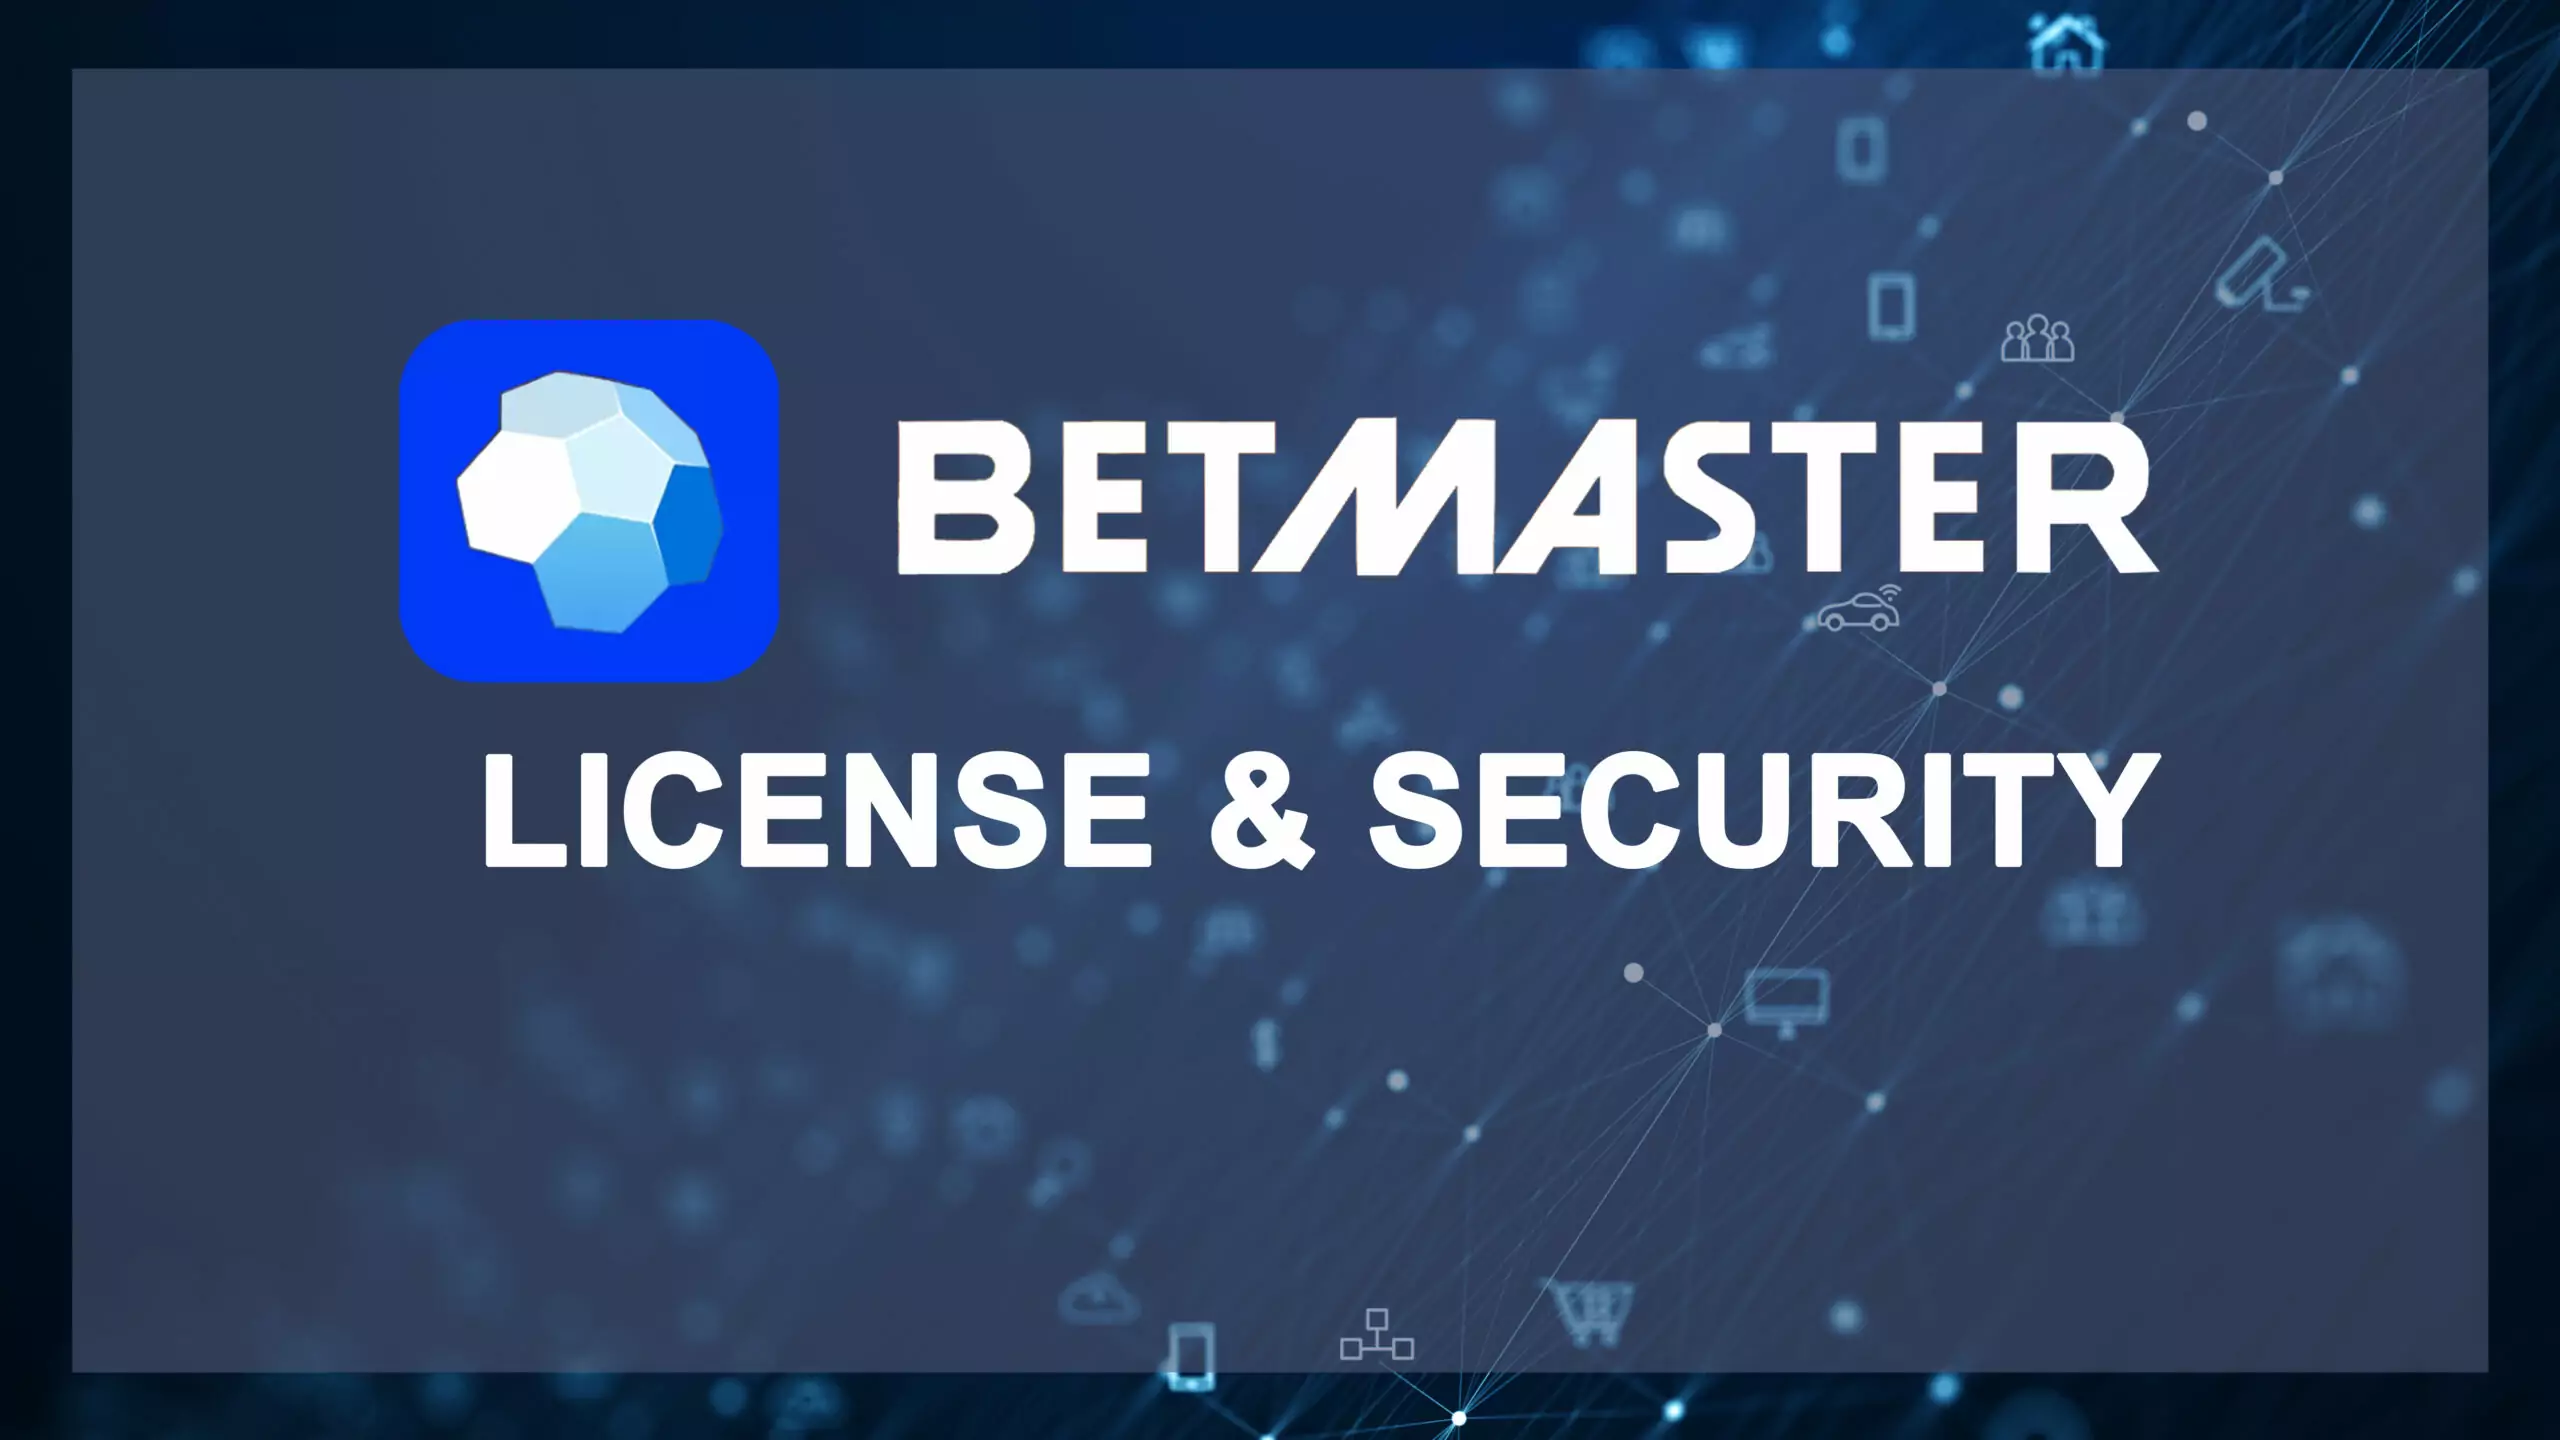 Betmaster भारत में सट्टेबाजी और खेलने के लिए एक सुरक्षित और कानूनी सेवा है।